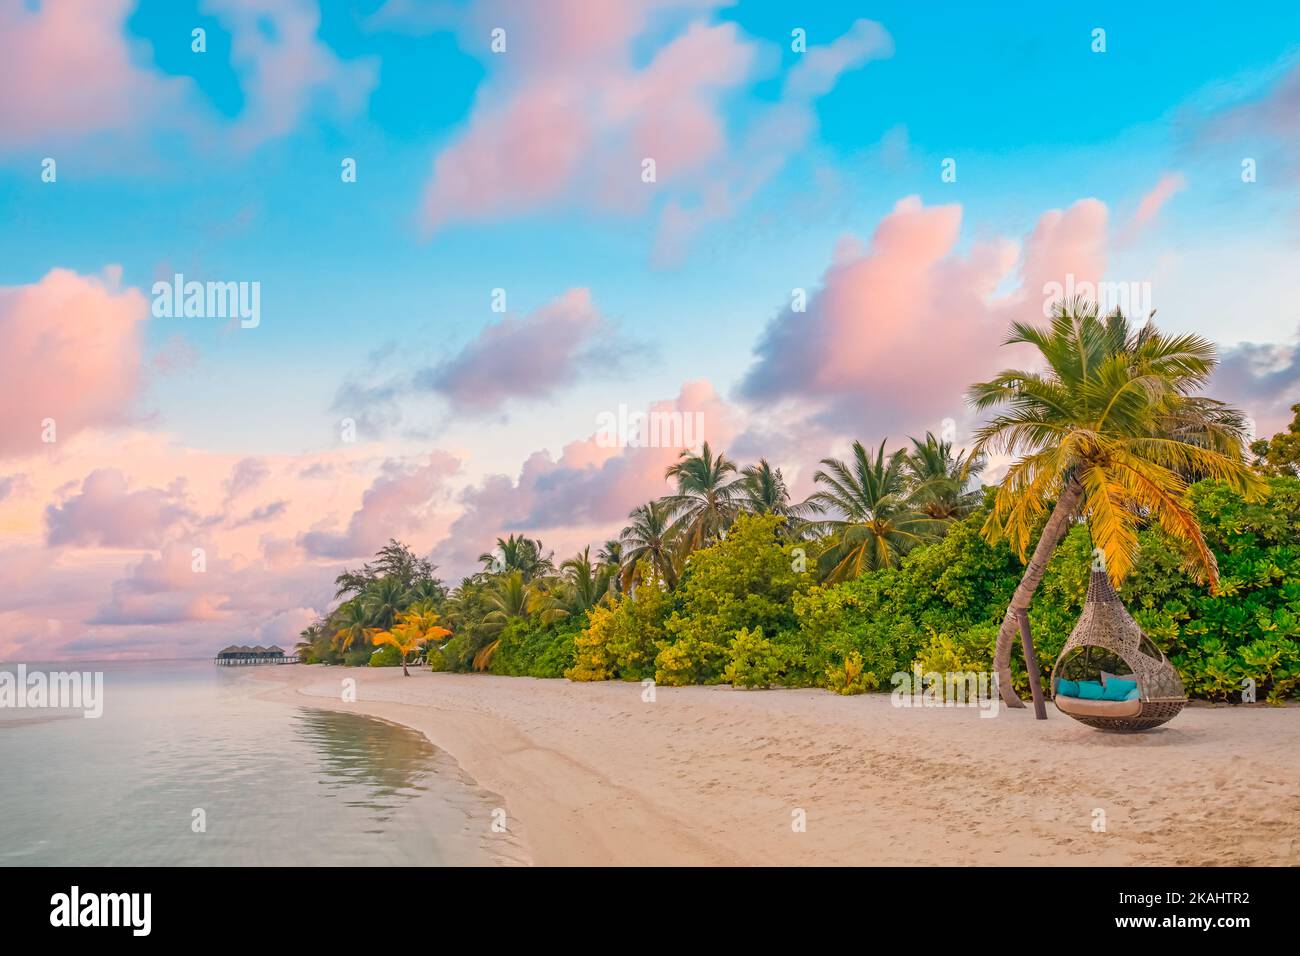 Isola palma mare spiaggia di sabbia. Panorama della spiaggia. Ispirate l'orizzonte tropicale della spiaggia. Arancione e dorato tramonto cielo calma tranquillità Foto Stock